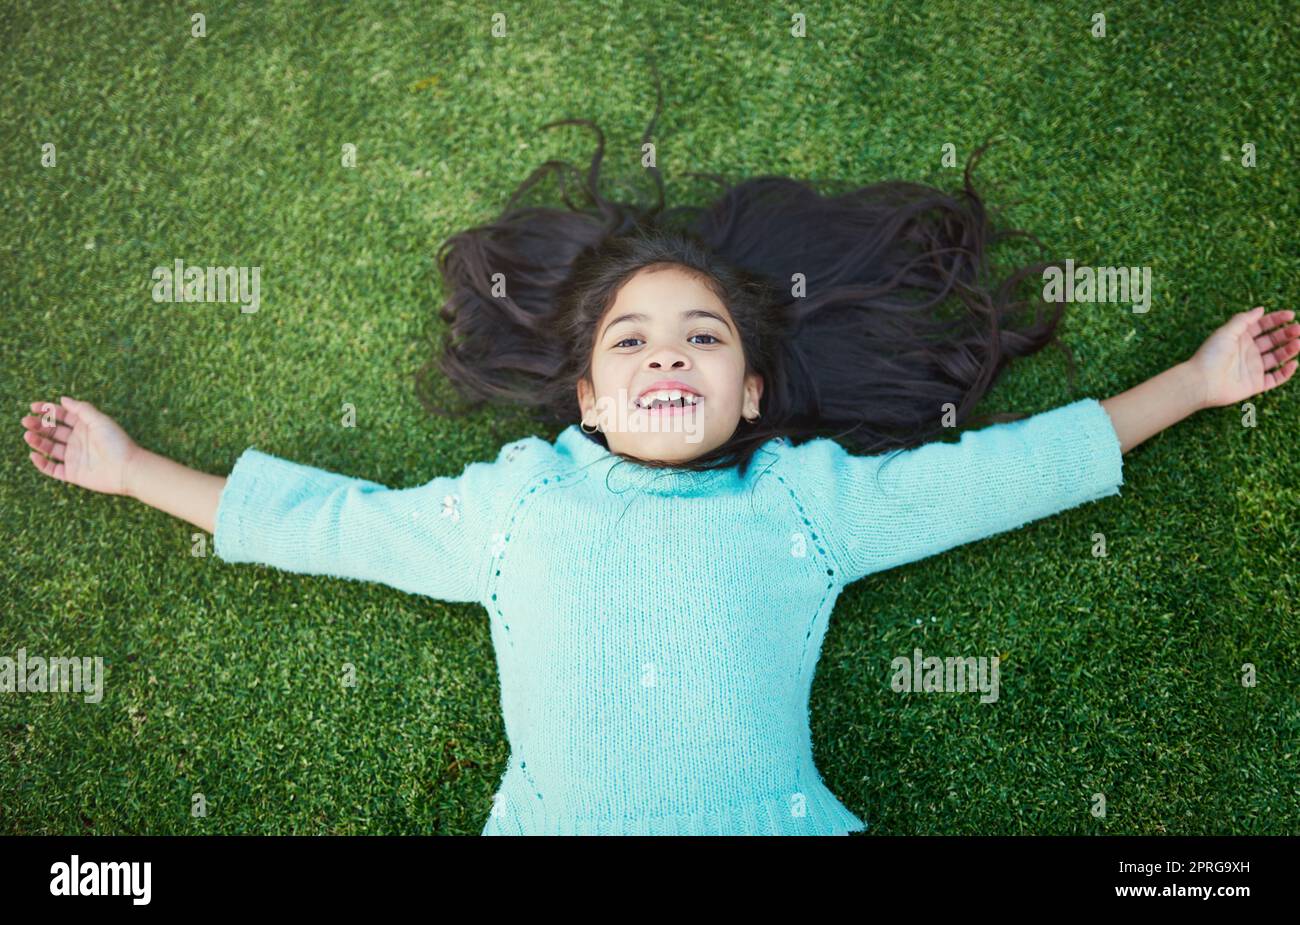 Tagelang Glück. Porträt eines glücklichen kleinen Mädchens, das draußen auf dem Rasen spielt. Stockfoto